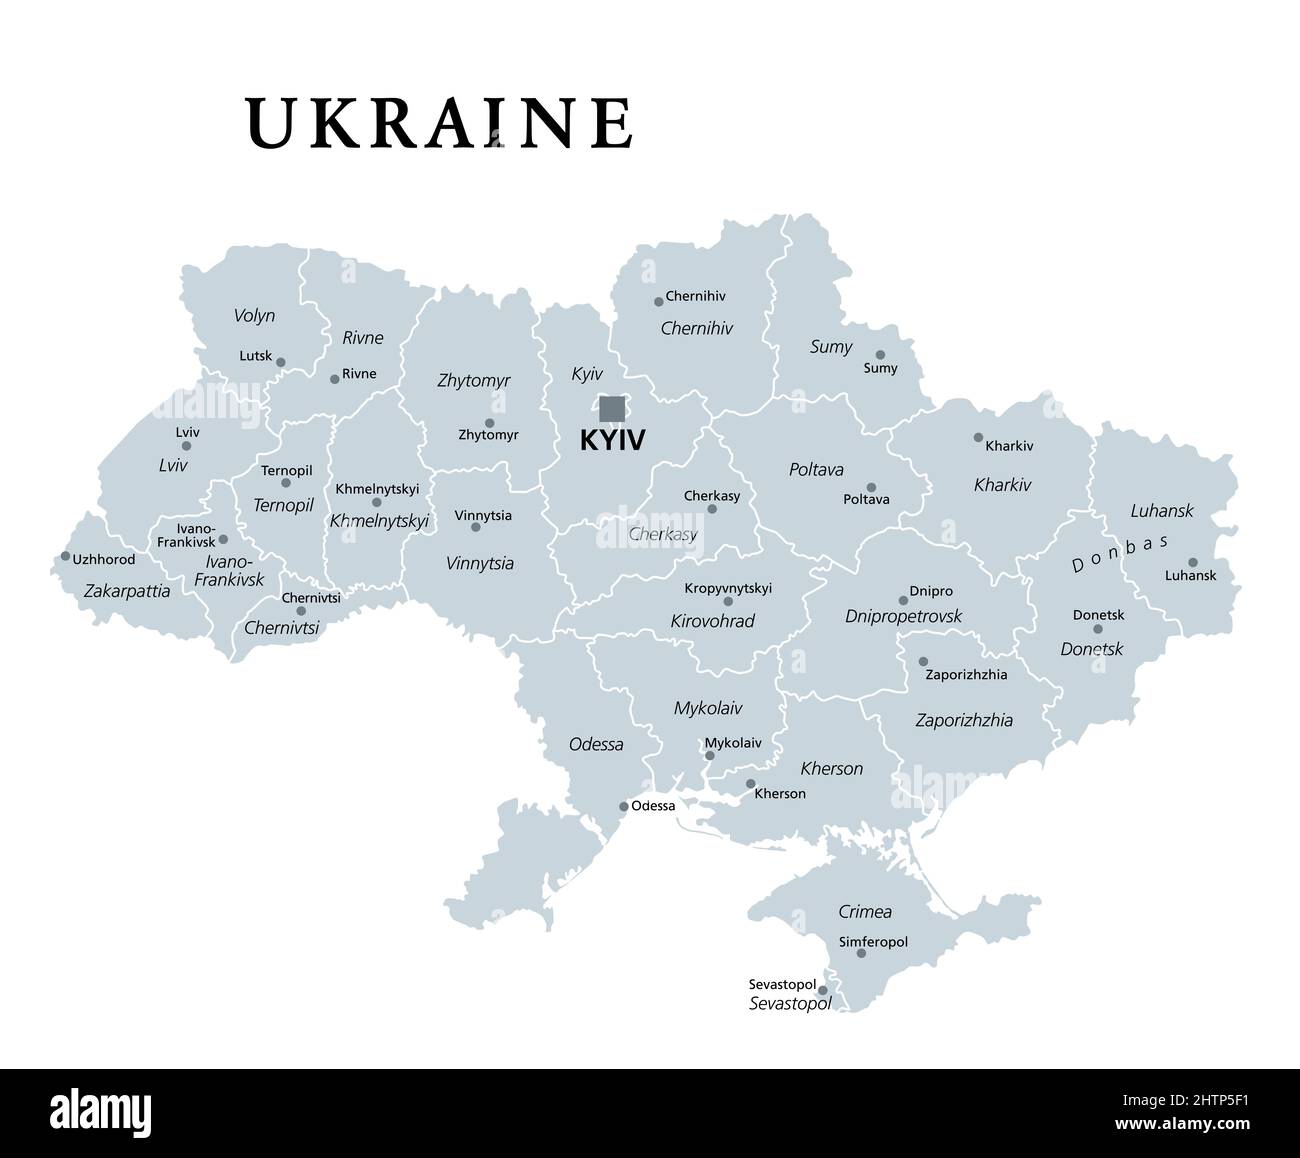 Ucraina, suddivisione del paese, mappa politica grigia. Divisioni amministrative dell'Ucraina con centri amministrativi, stato unitario nell'Europa orientale. Foto Stock